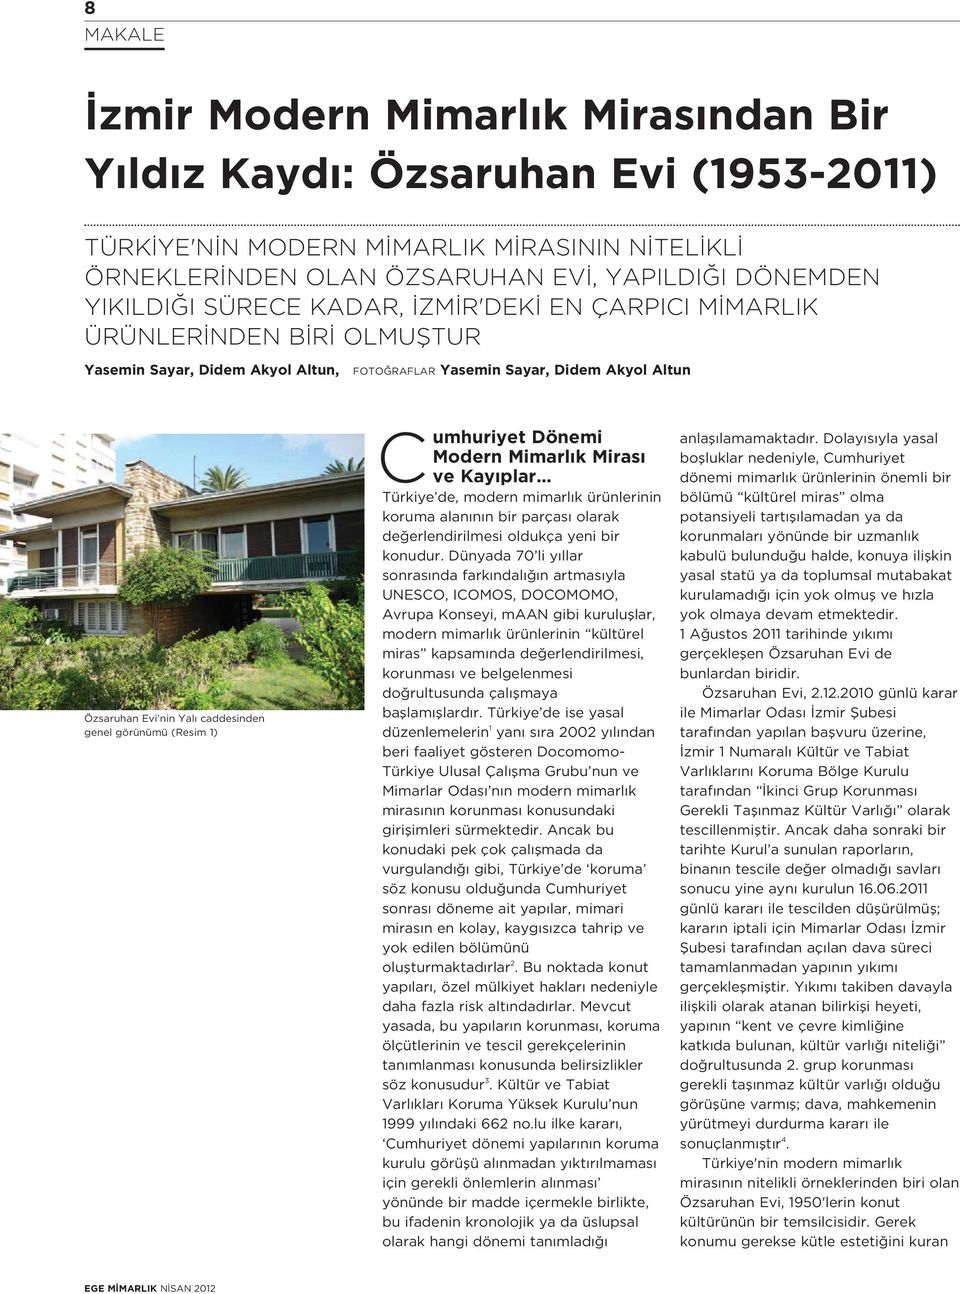 1) C umhuriyet Dönemi Modern Mimarl k Miras ve Kay plar Türkiye de, modern mimarl k ürünlerinin koruma alan n n bir parças olarak de erlendirilmesi oldukça yeni bir konudur.